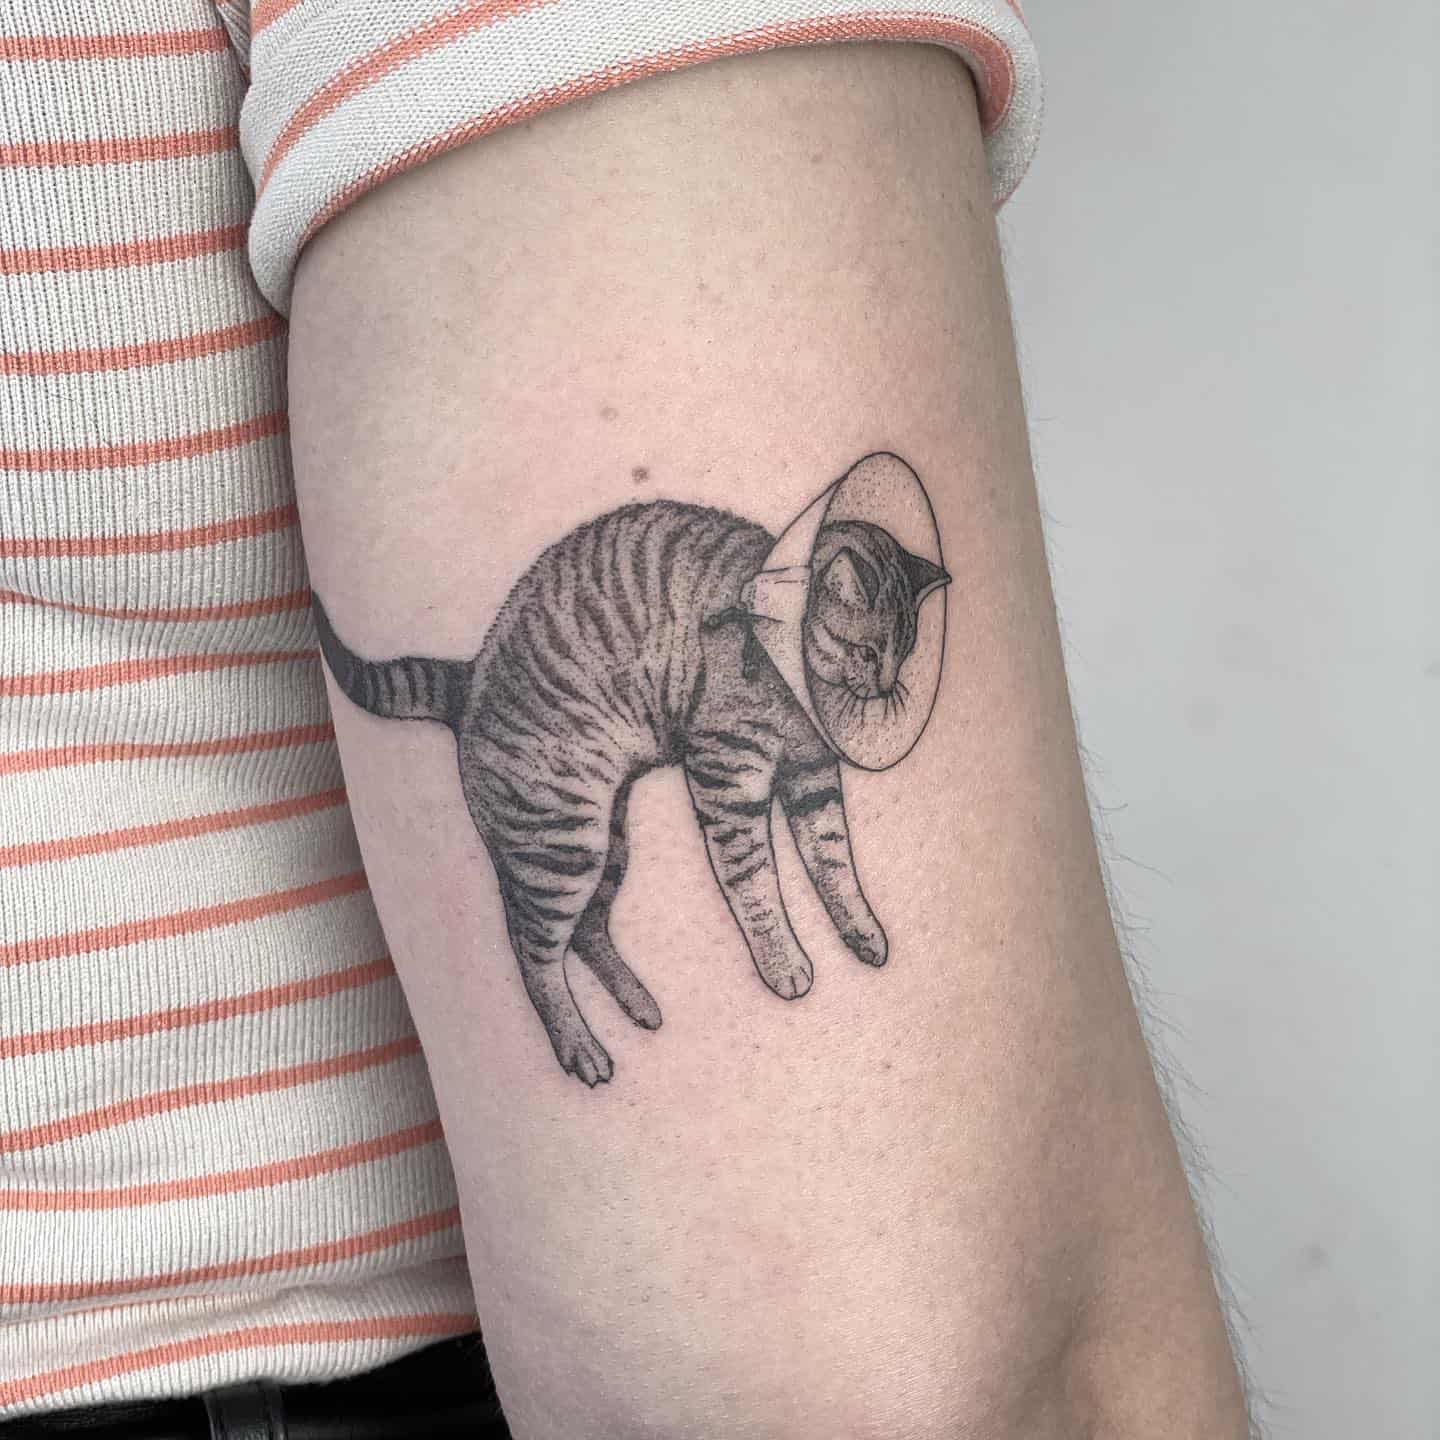 Cat tattoo on arm by celesteciafarone